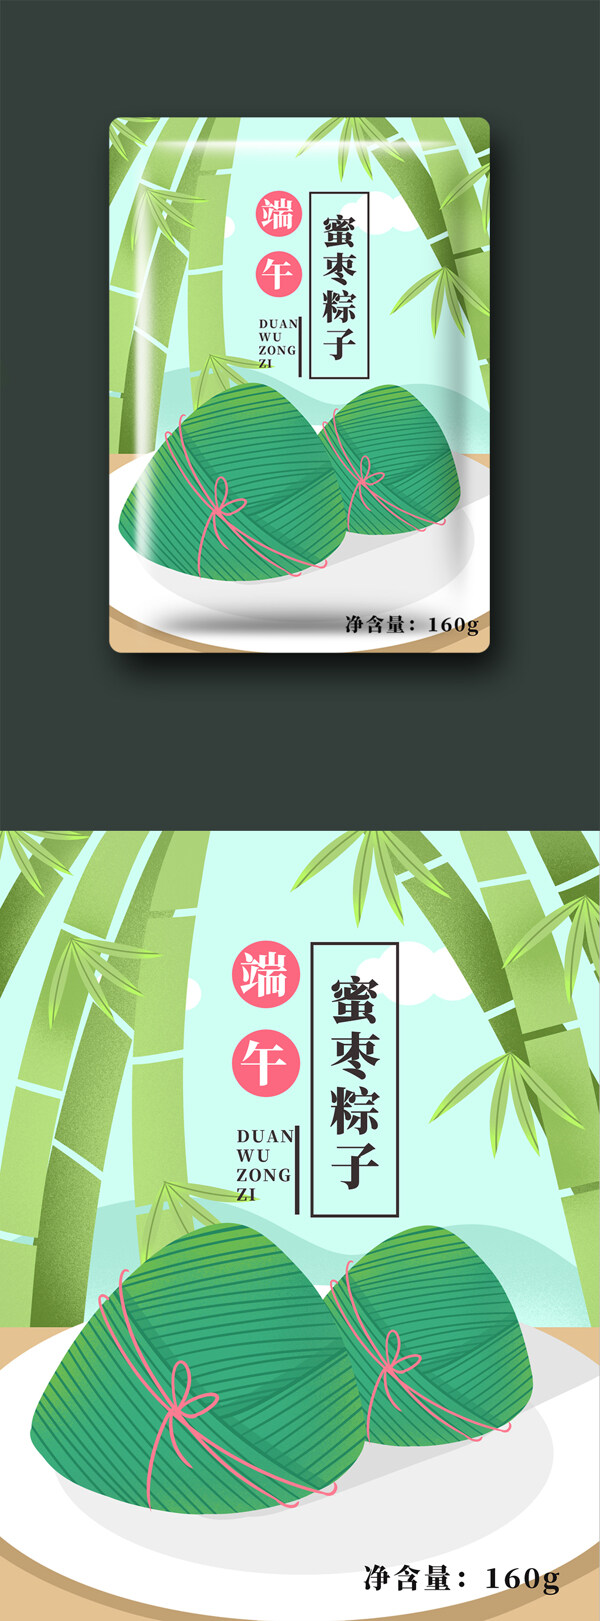 端午节粽子插画包装